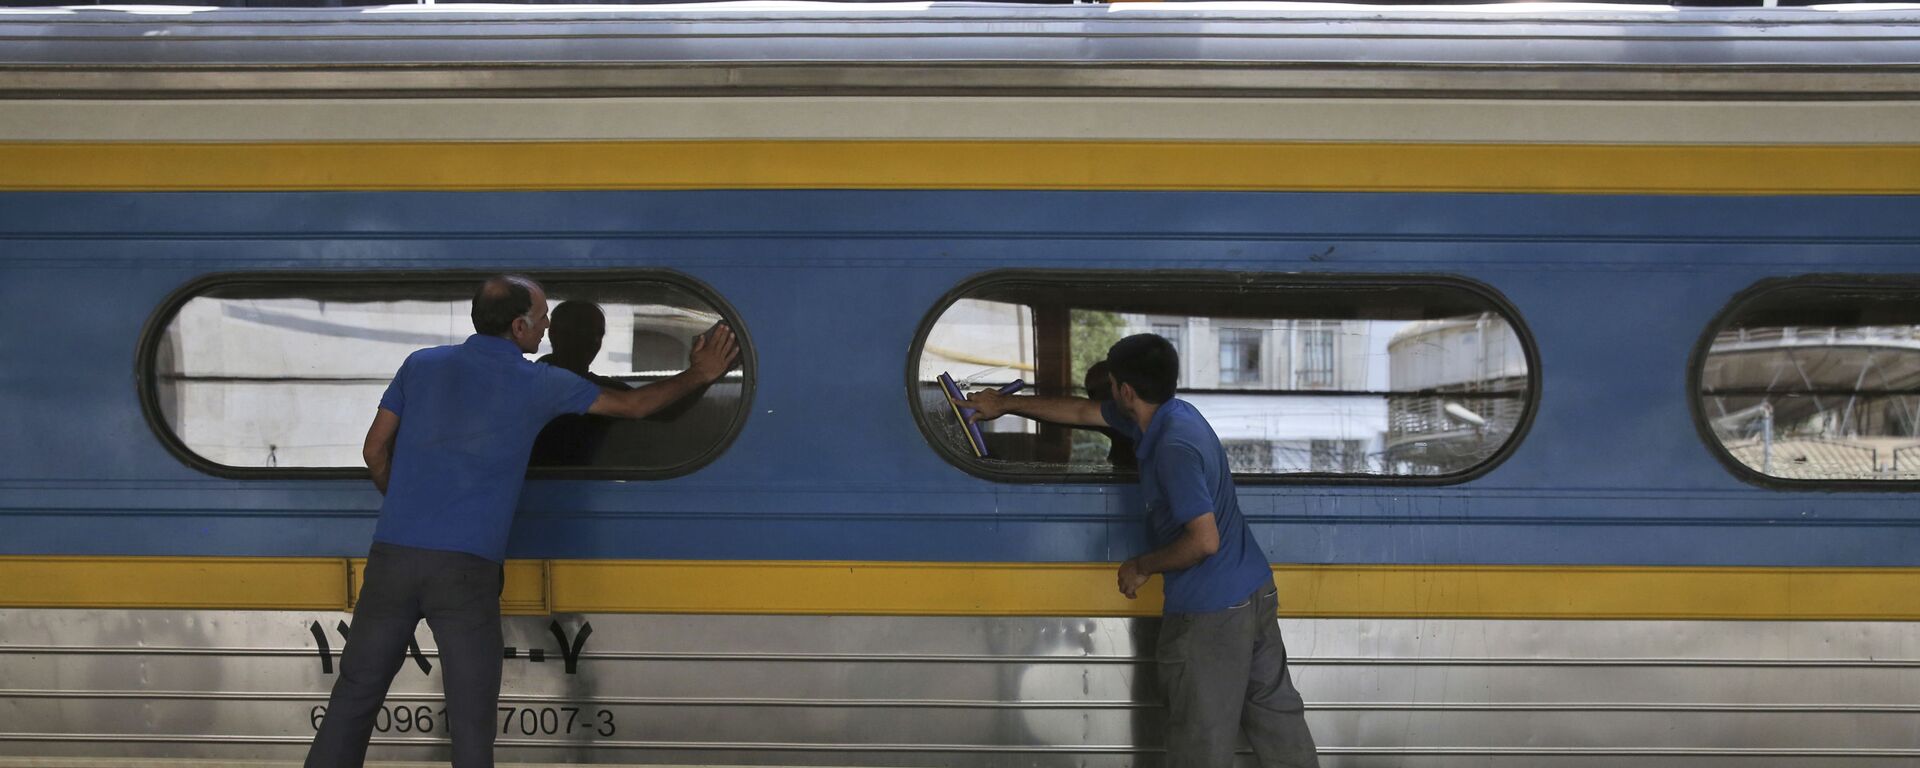 Двое рабочих моют окна у вагоне поезда на центральном вокзале Тегерана - Sputnik Тоҷикистон, 1920, 10.12.2020